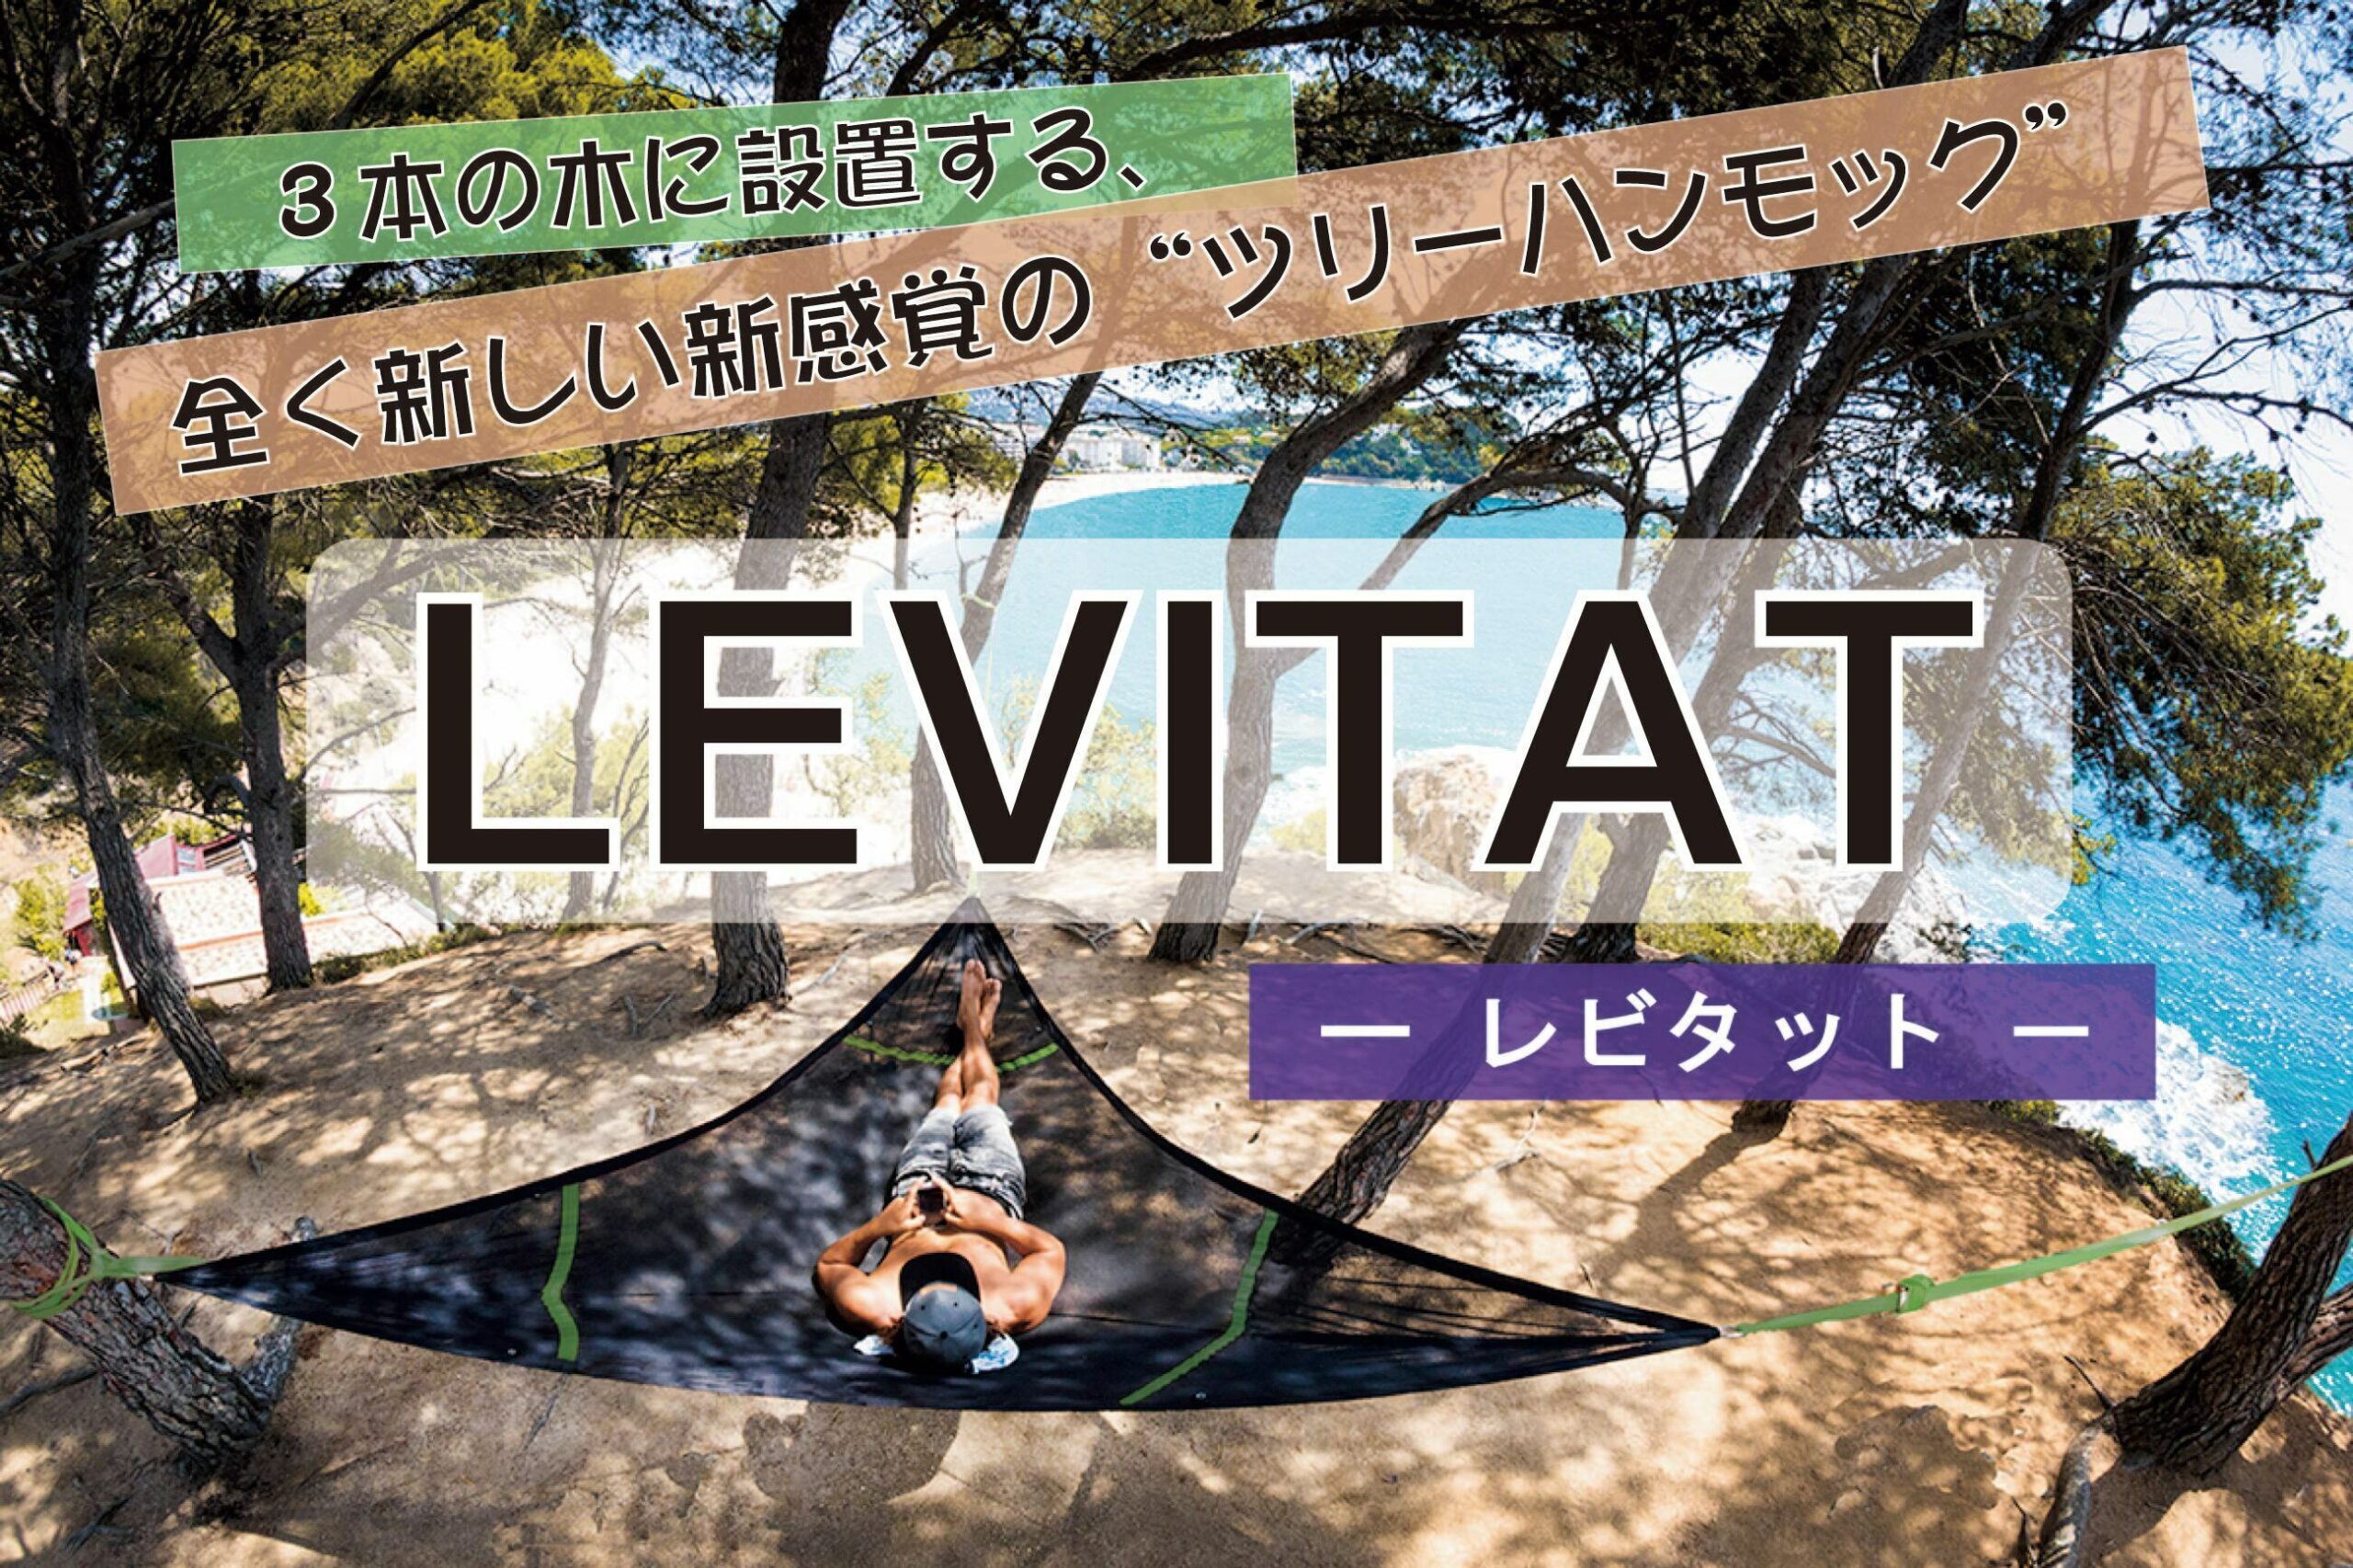   日本初上陸！ツリーハンモック「LEVITAT(レビタット)」 8月23日よりクラウドファンディング開始！ 3本の木に設置する、新感覚・新アウトドアギア